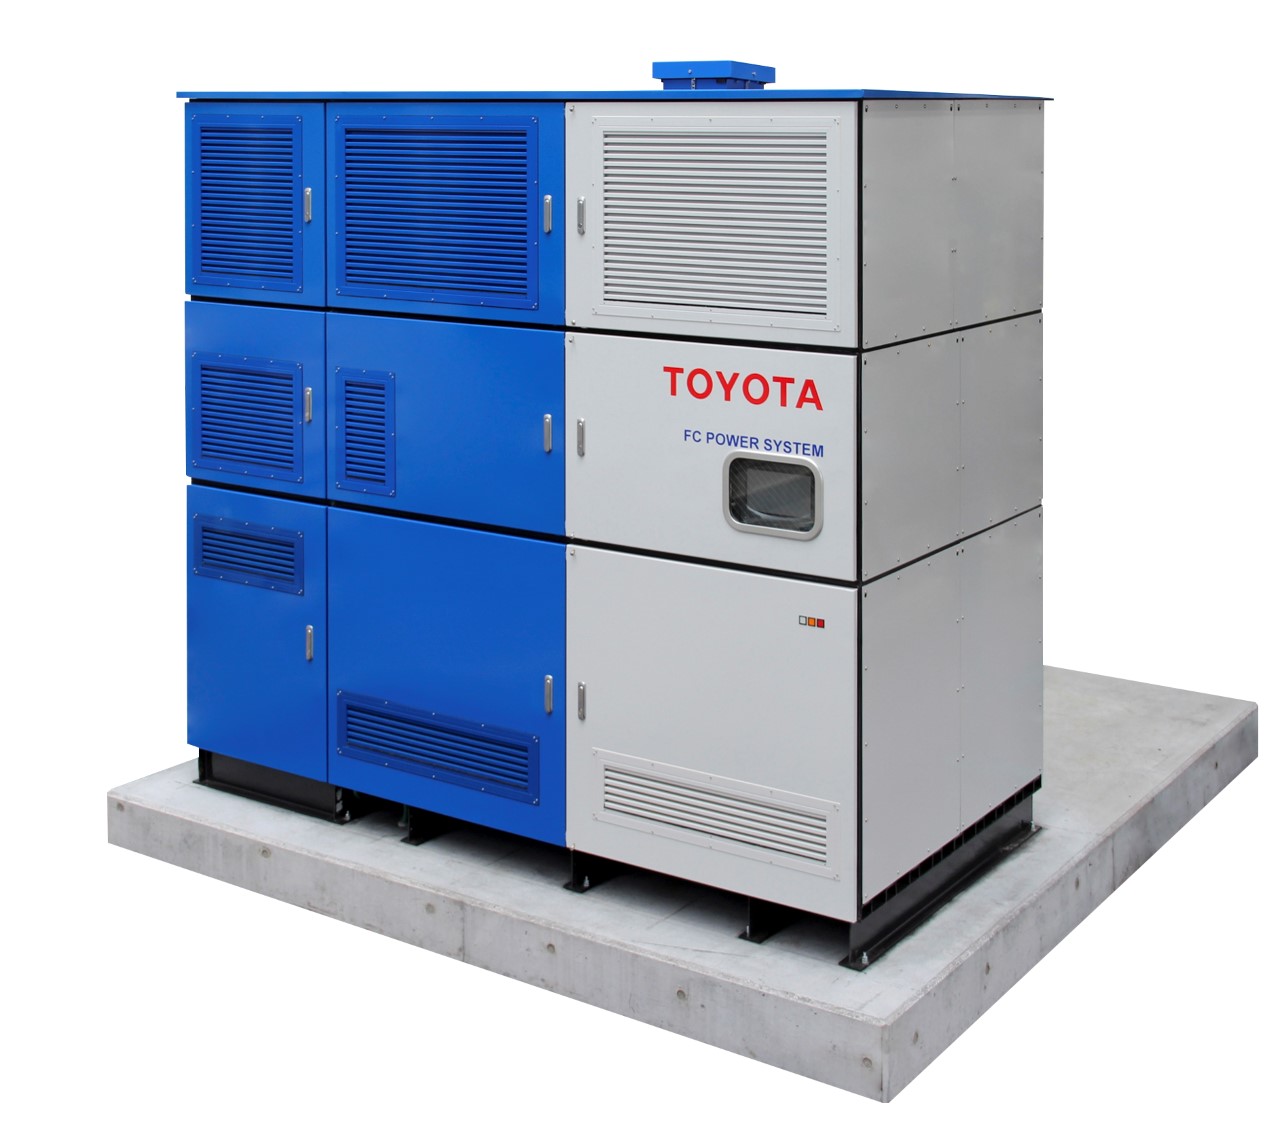 Toyota wytworzy prąd z wodoru będącego produktem ubocznym przemysłu chemicznego. Rusza program pilotażowy we współpracy z koncernem Tokuyama